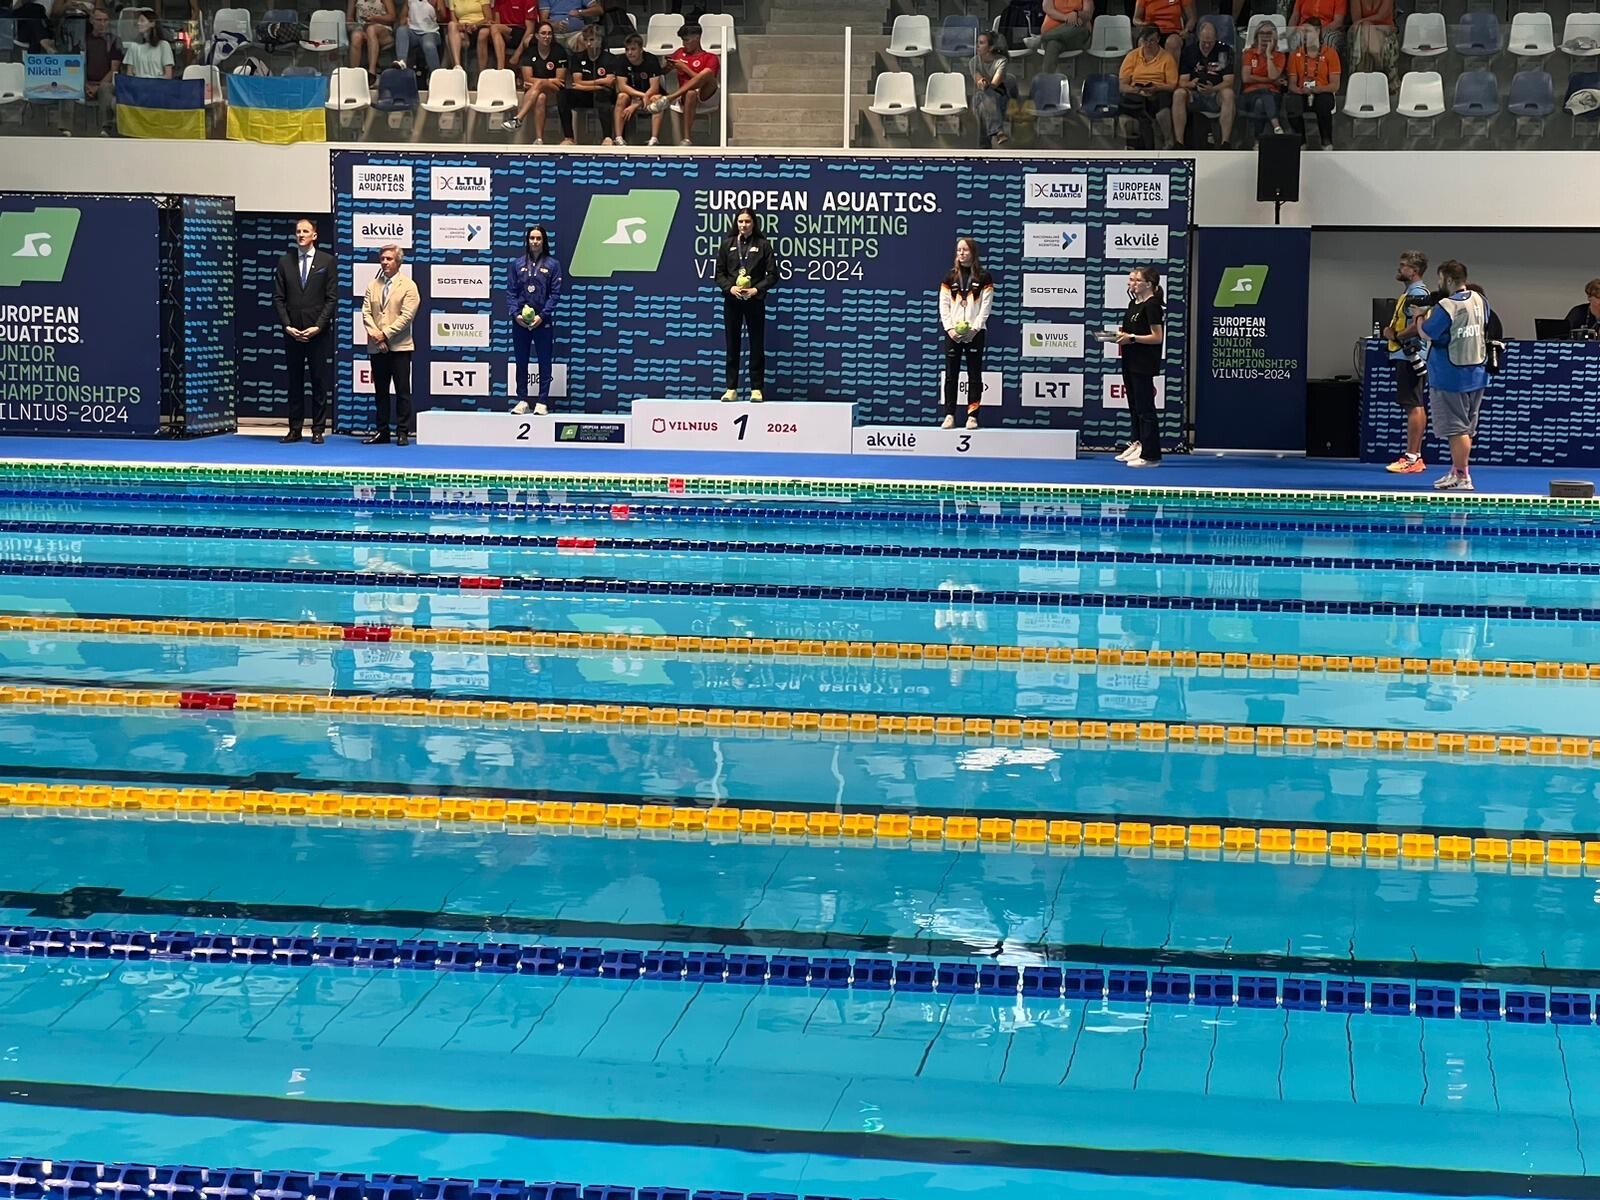 Sarah Dumont remporte l'OR, l'ARGENT et le BRONZE aux Championnats d'Europe de natation de Vilnius 2024